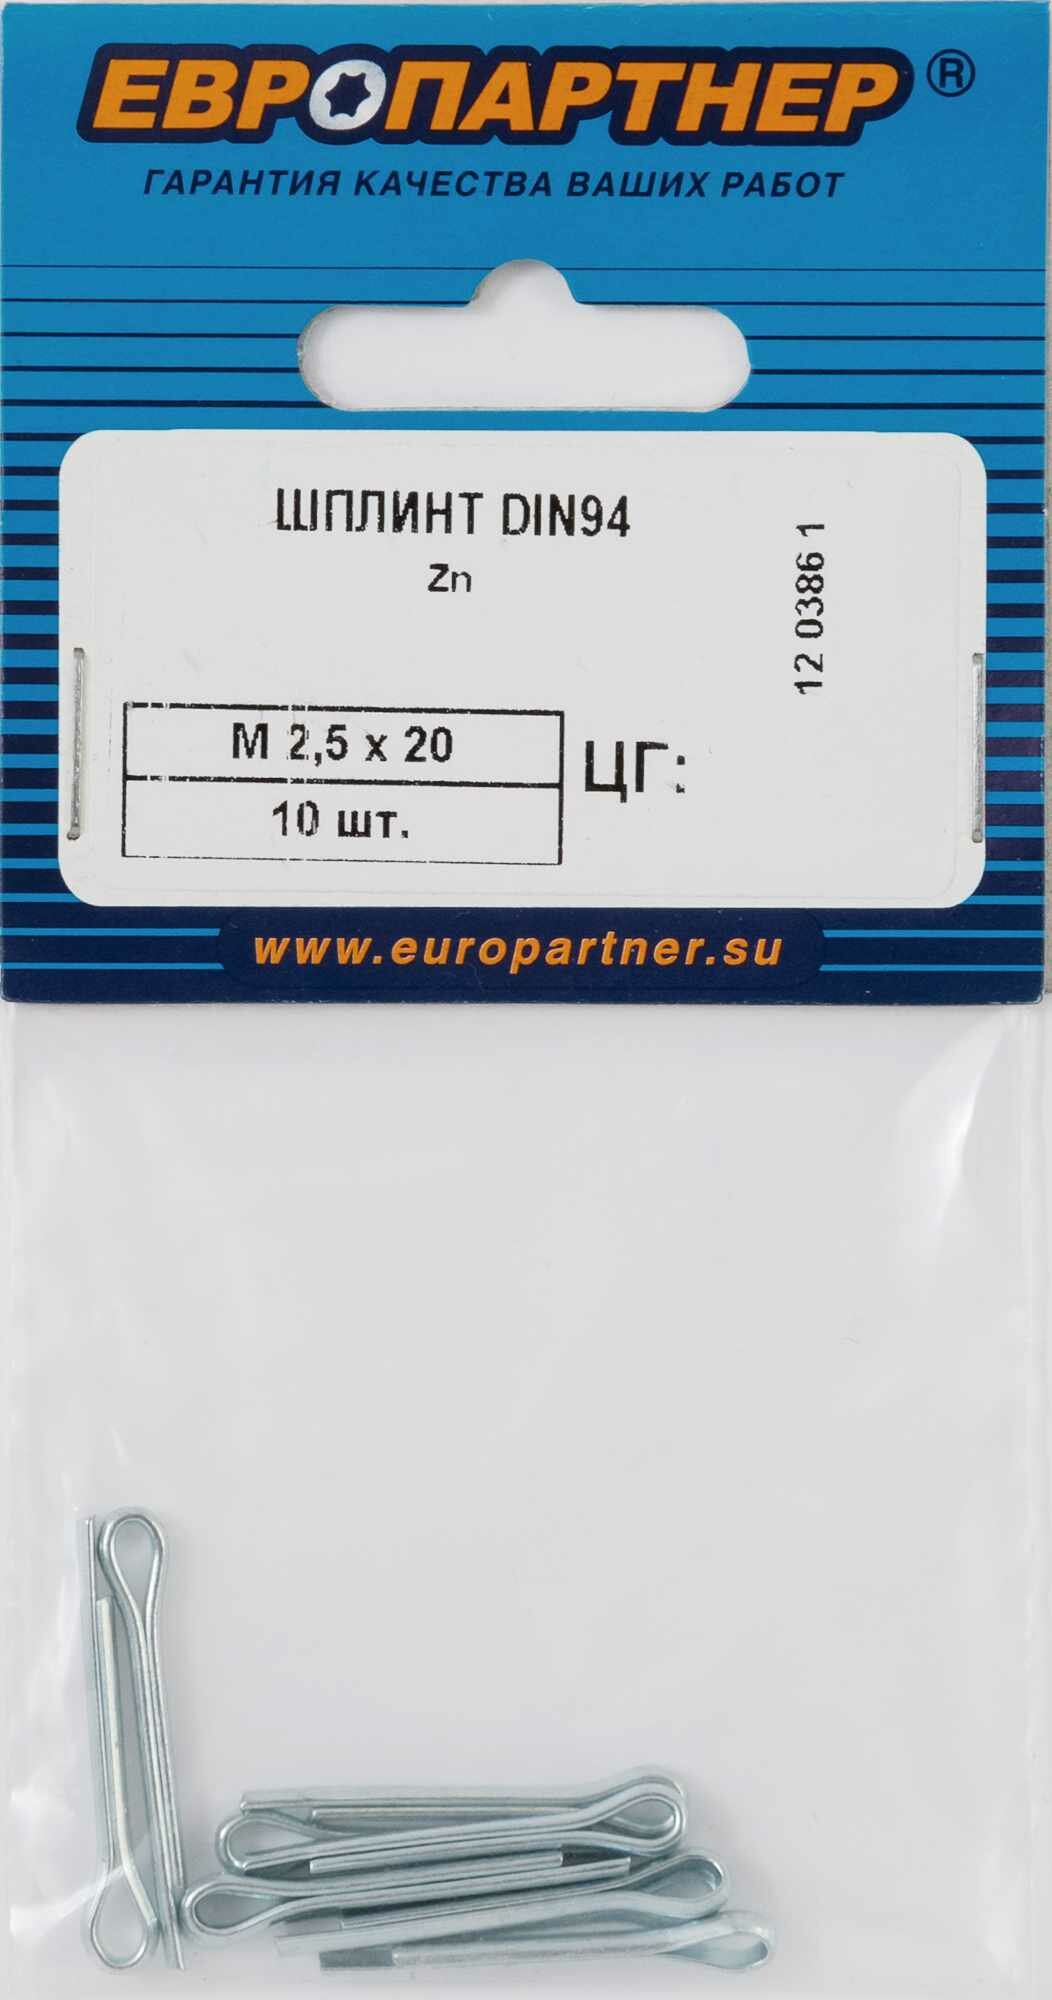 Шплинт DIN94 2.5x20 мм Европартнер M, 10 шт.